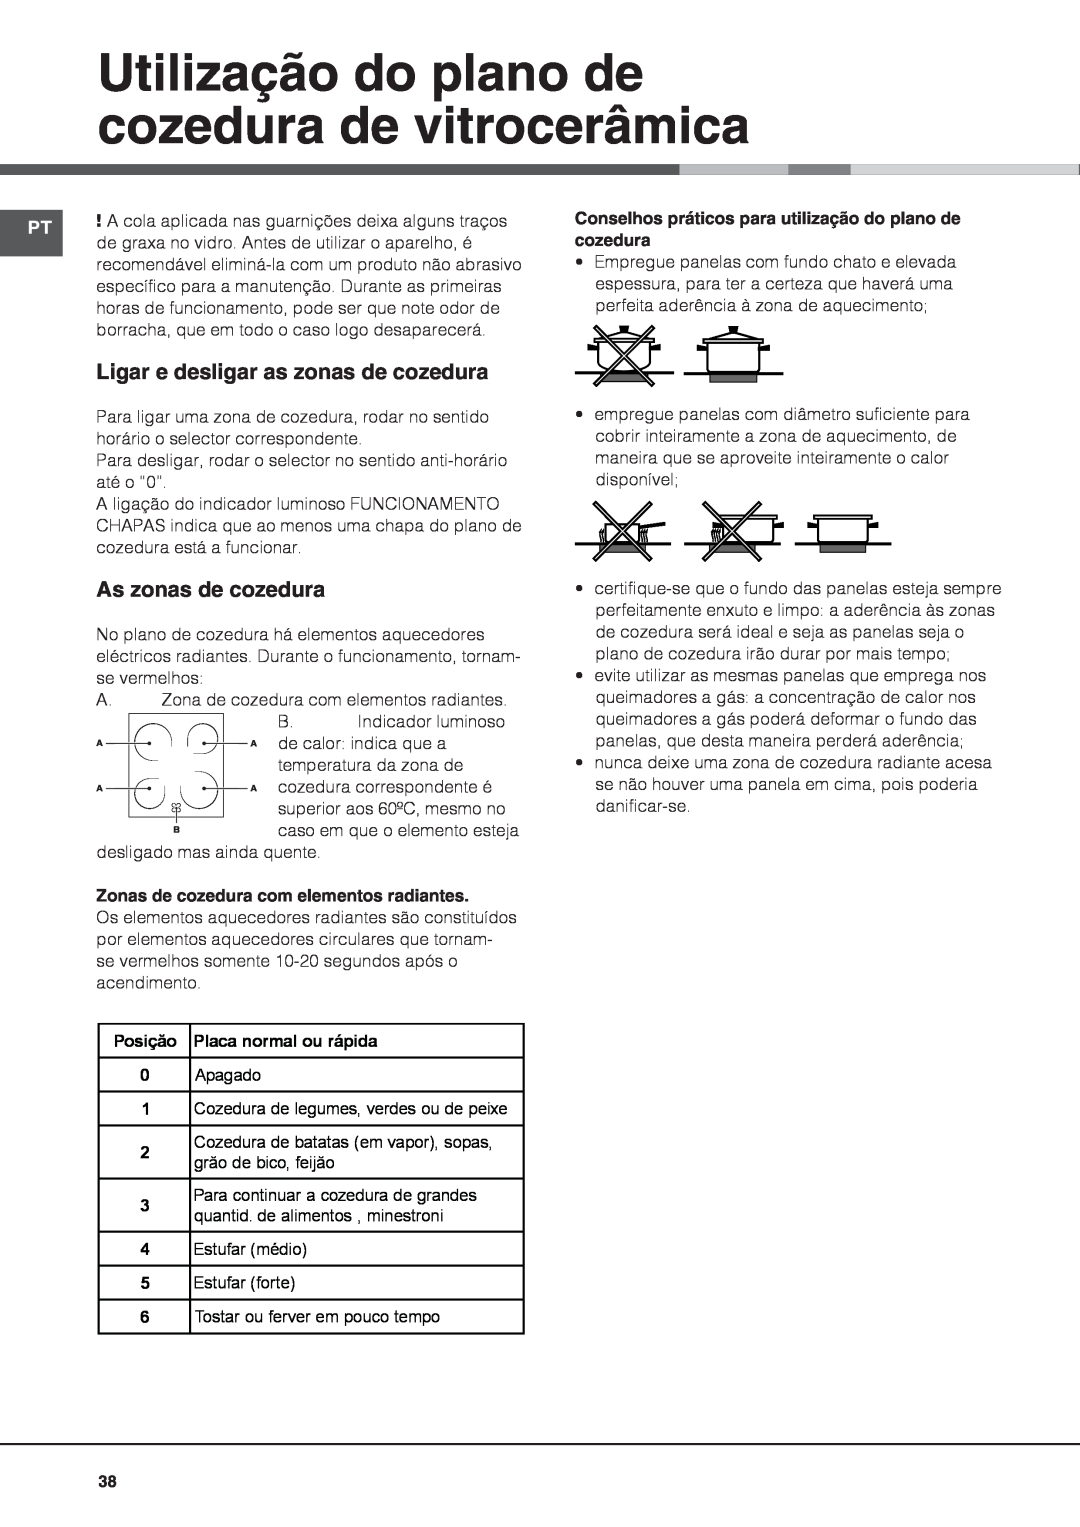 Indesit IS60C1 S manual Utilização do plano de cozedura de vitrocerâmica, Ligar e desligar as zonas de cozedura 